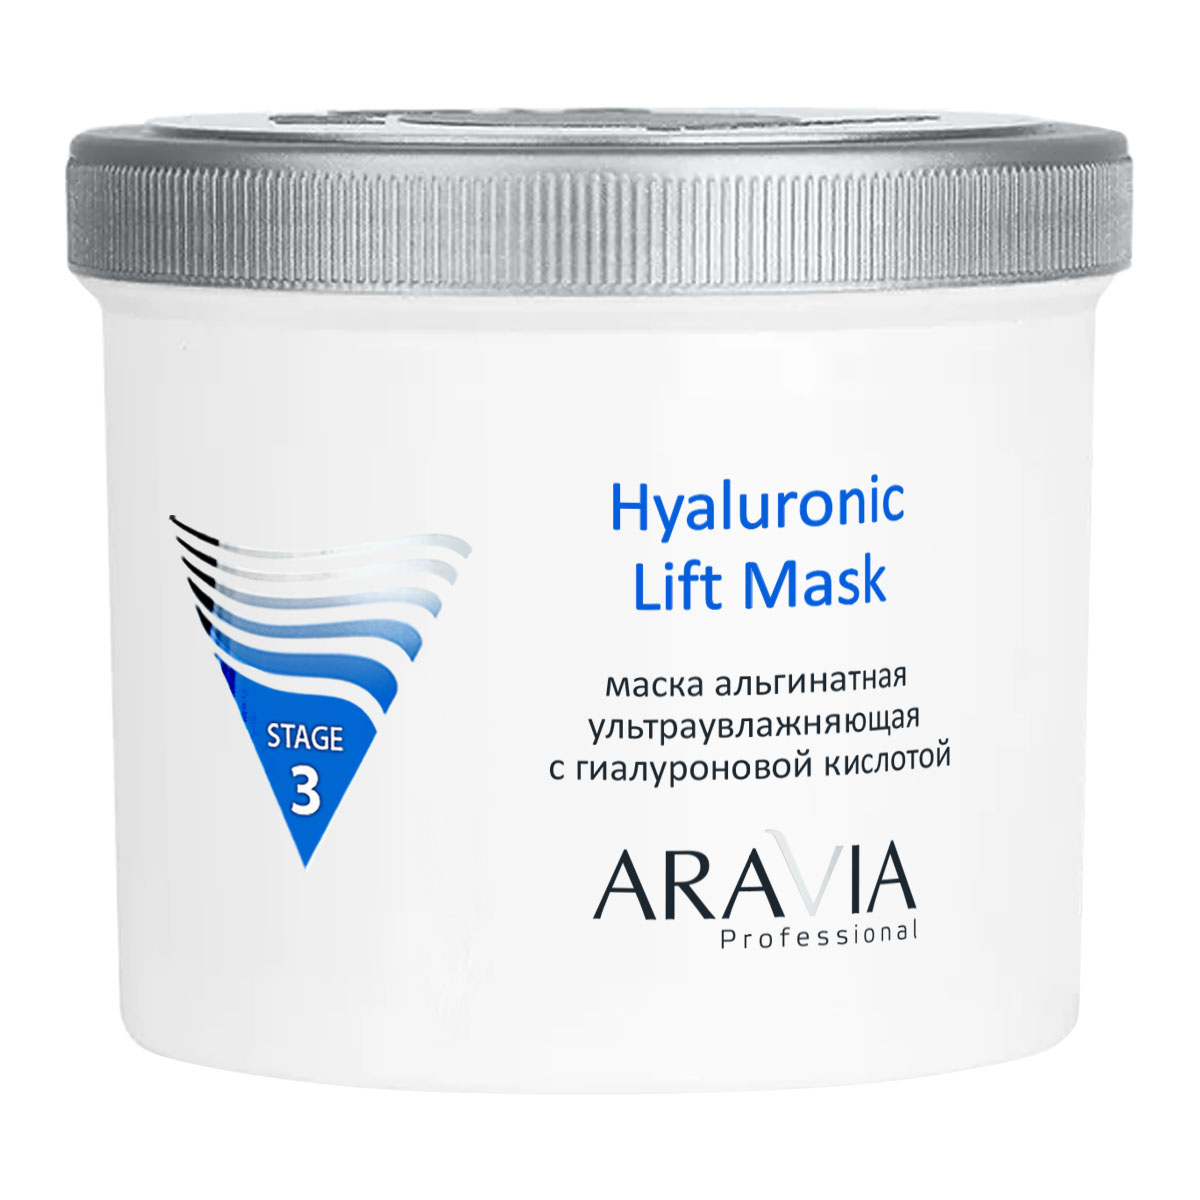 Aravia Professional Альгинатная маска ультраувлажняющая с гиалуроновой кислотой Hyaluronic Lift Mask, 550 мл (Aravia Professional, Уход за лицом)